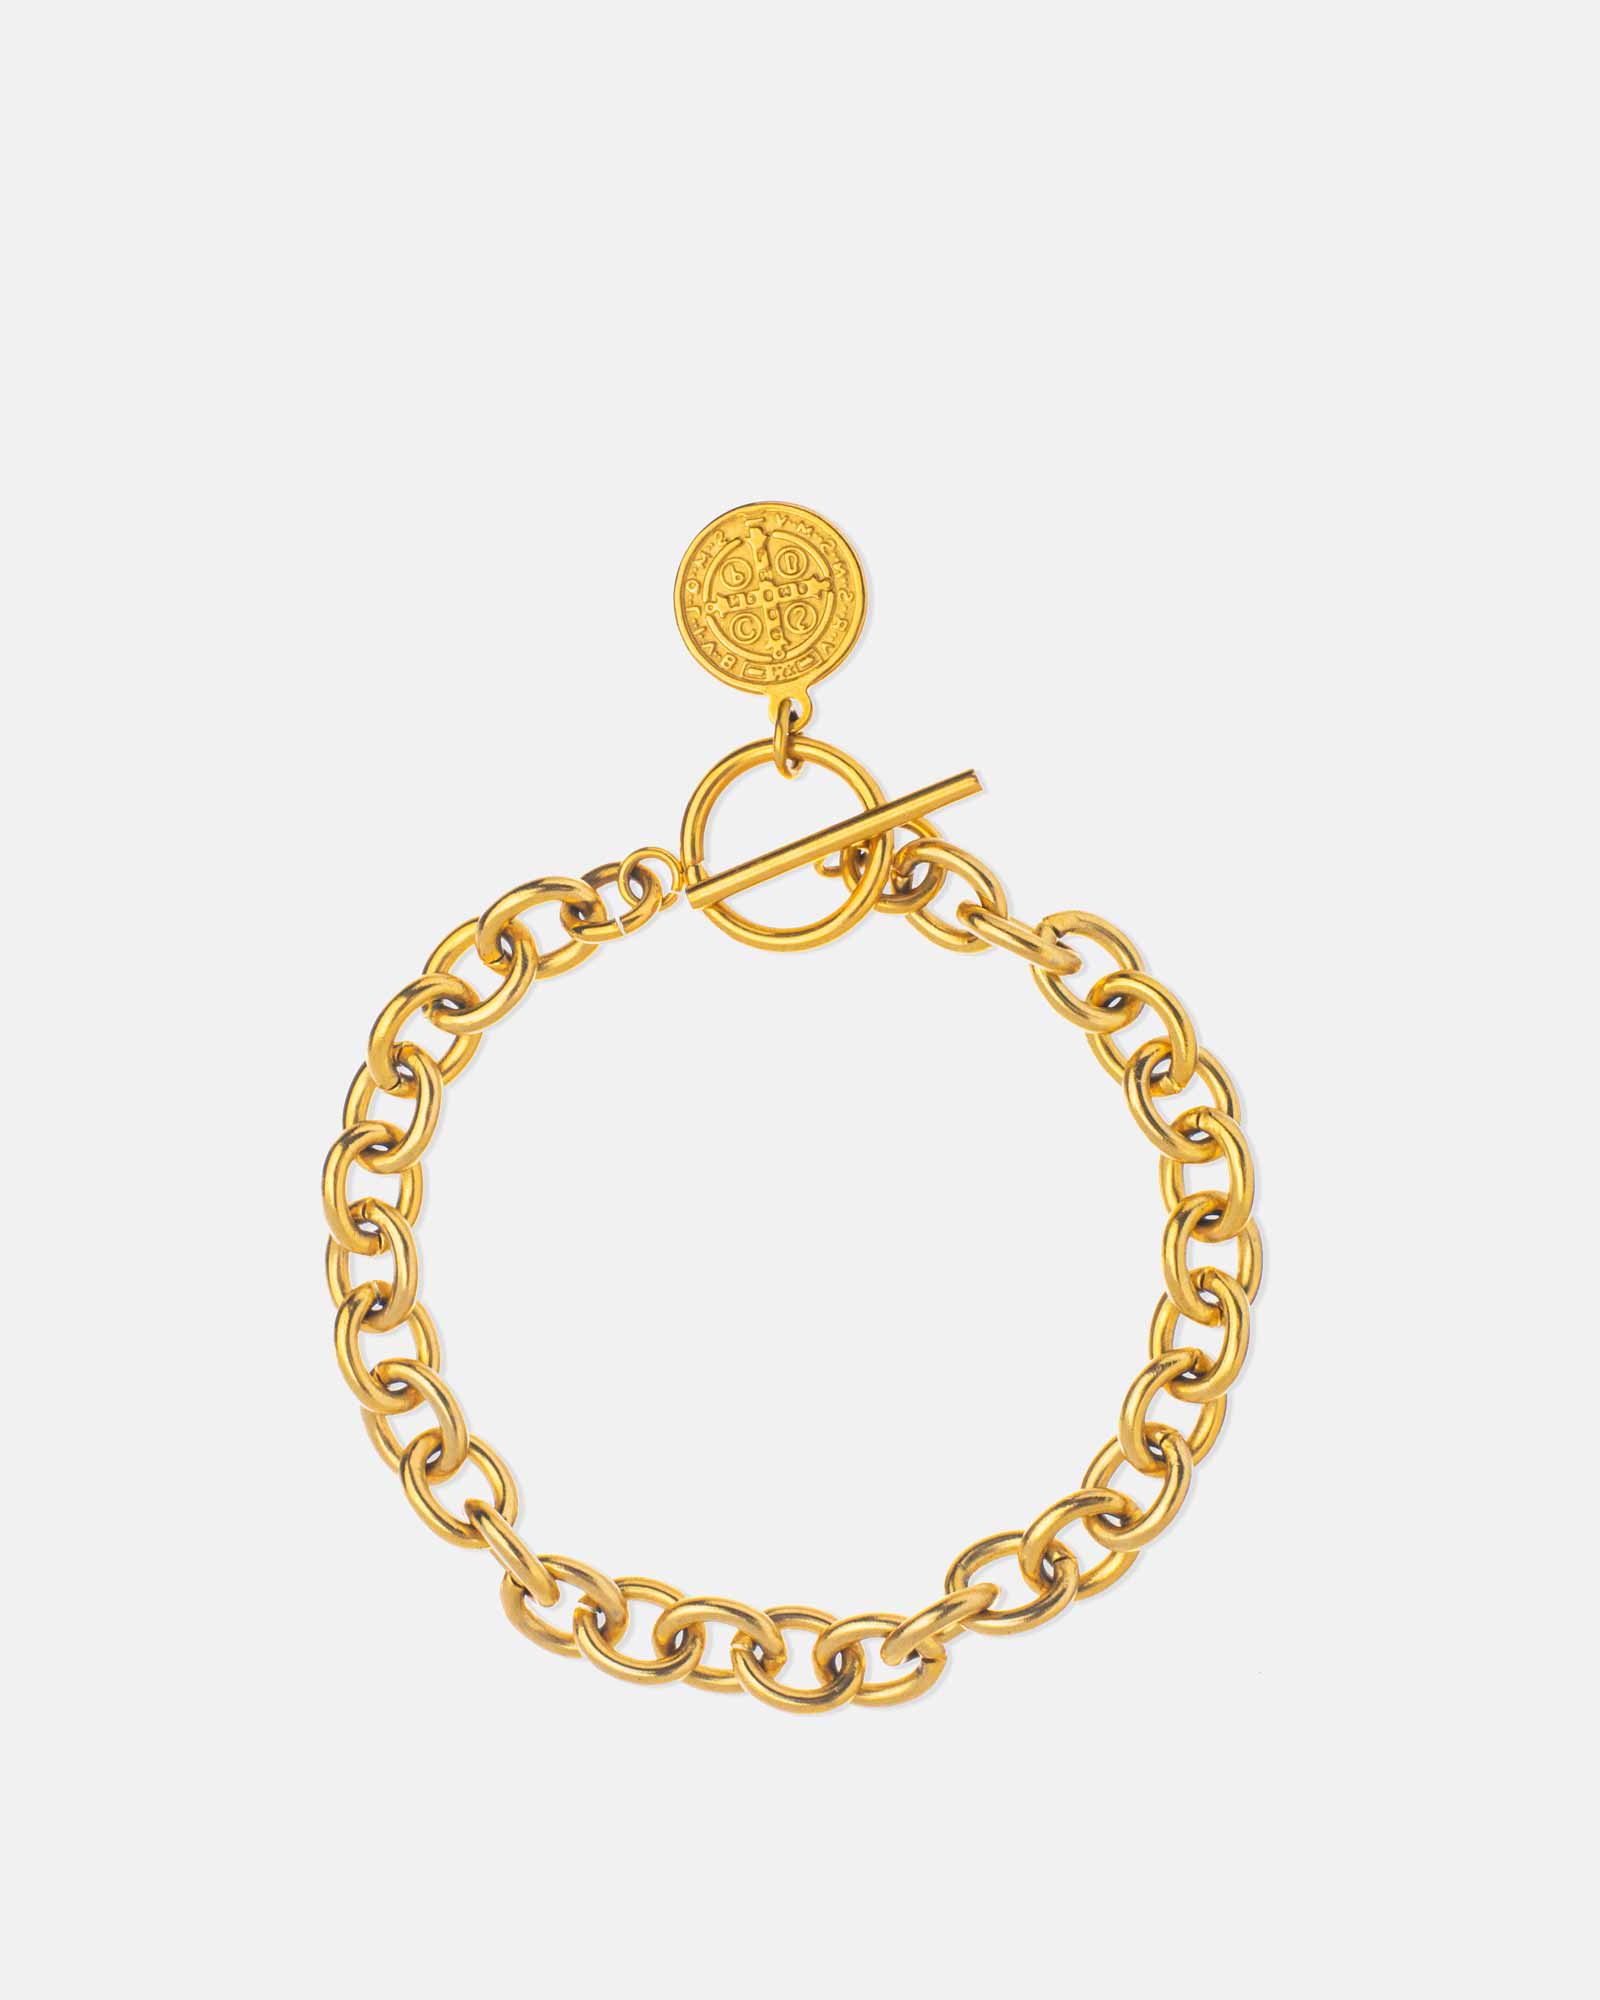 St. Benedict's Link Bracelet golden